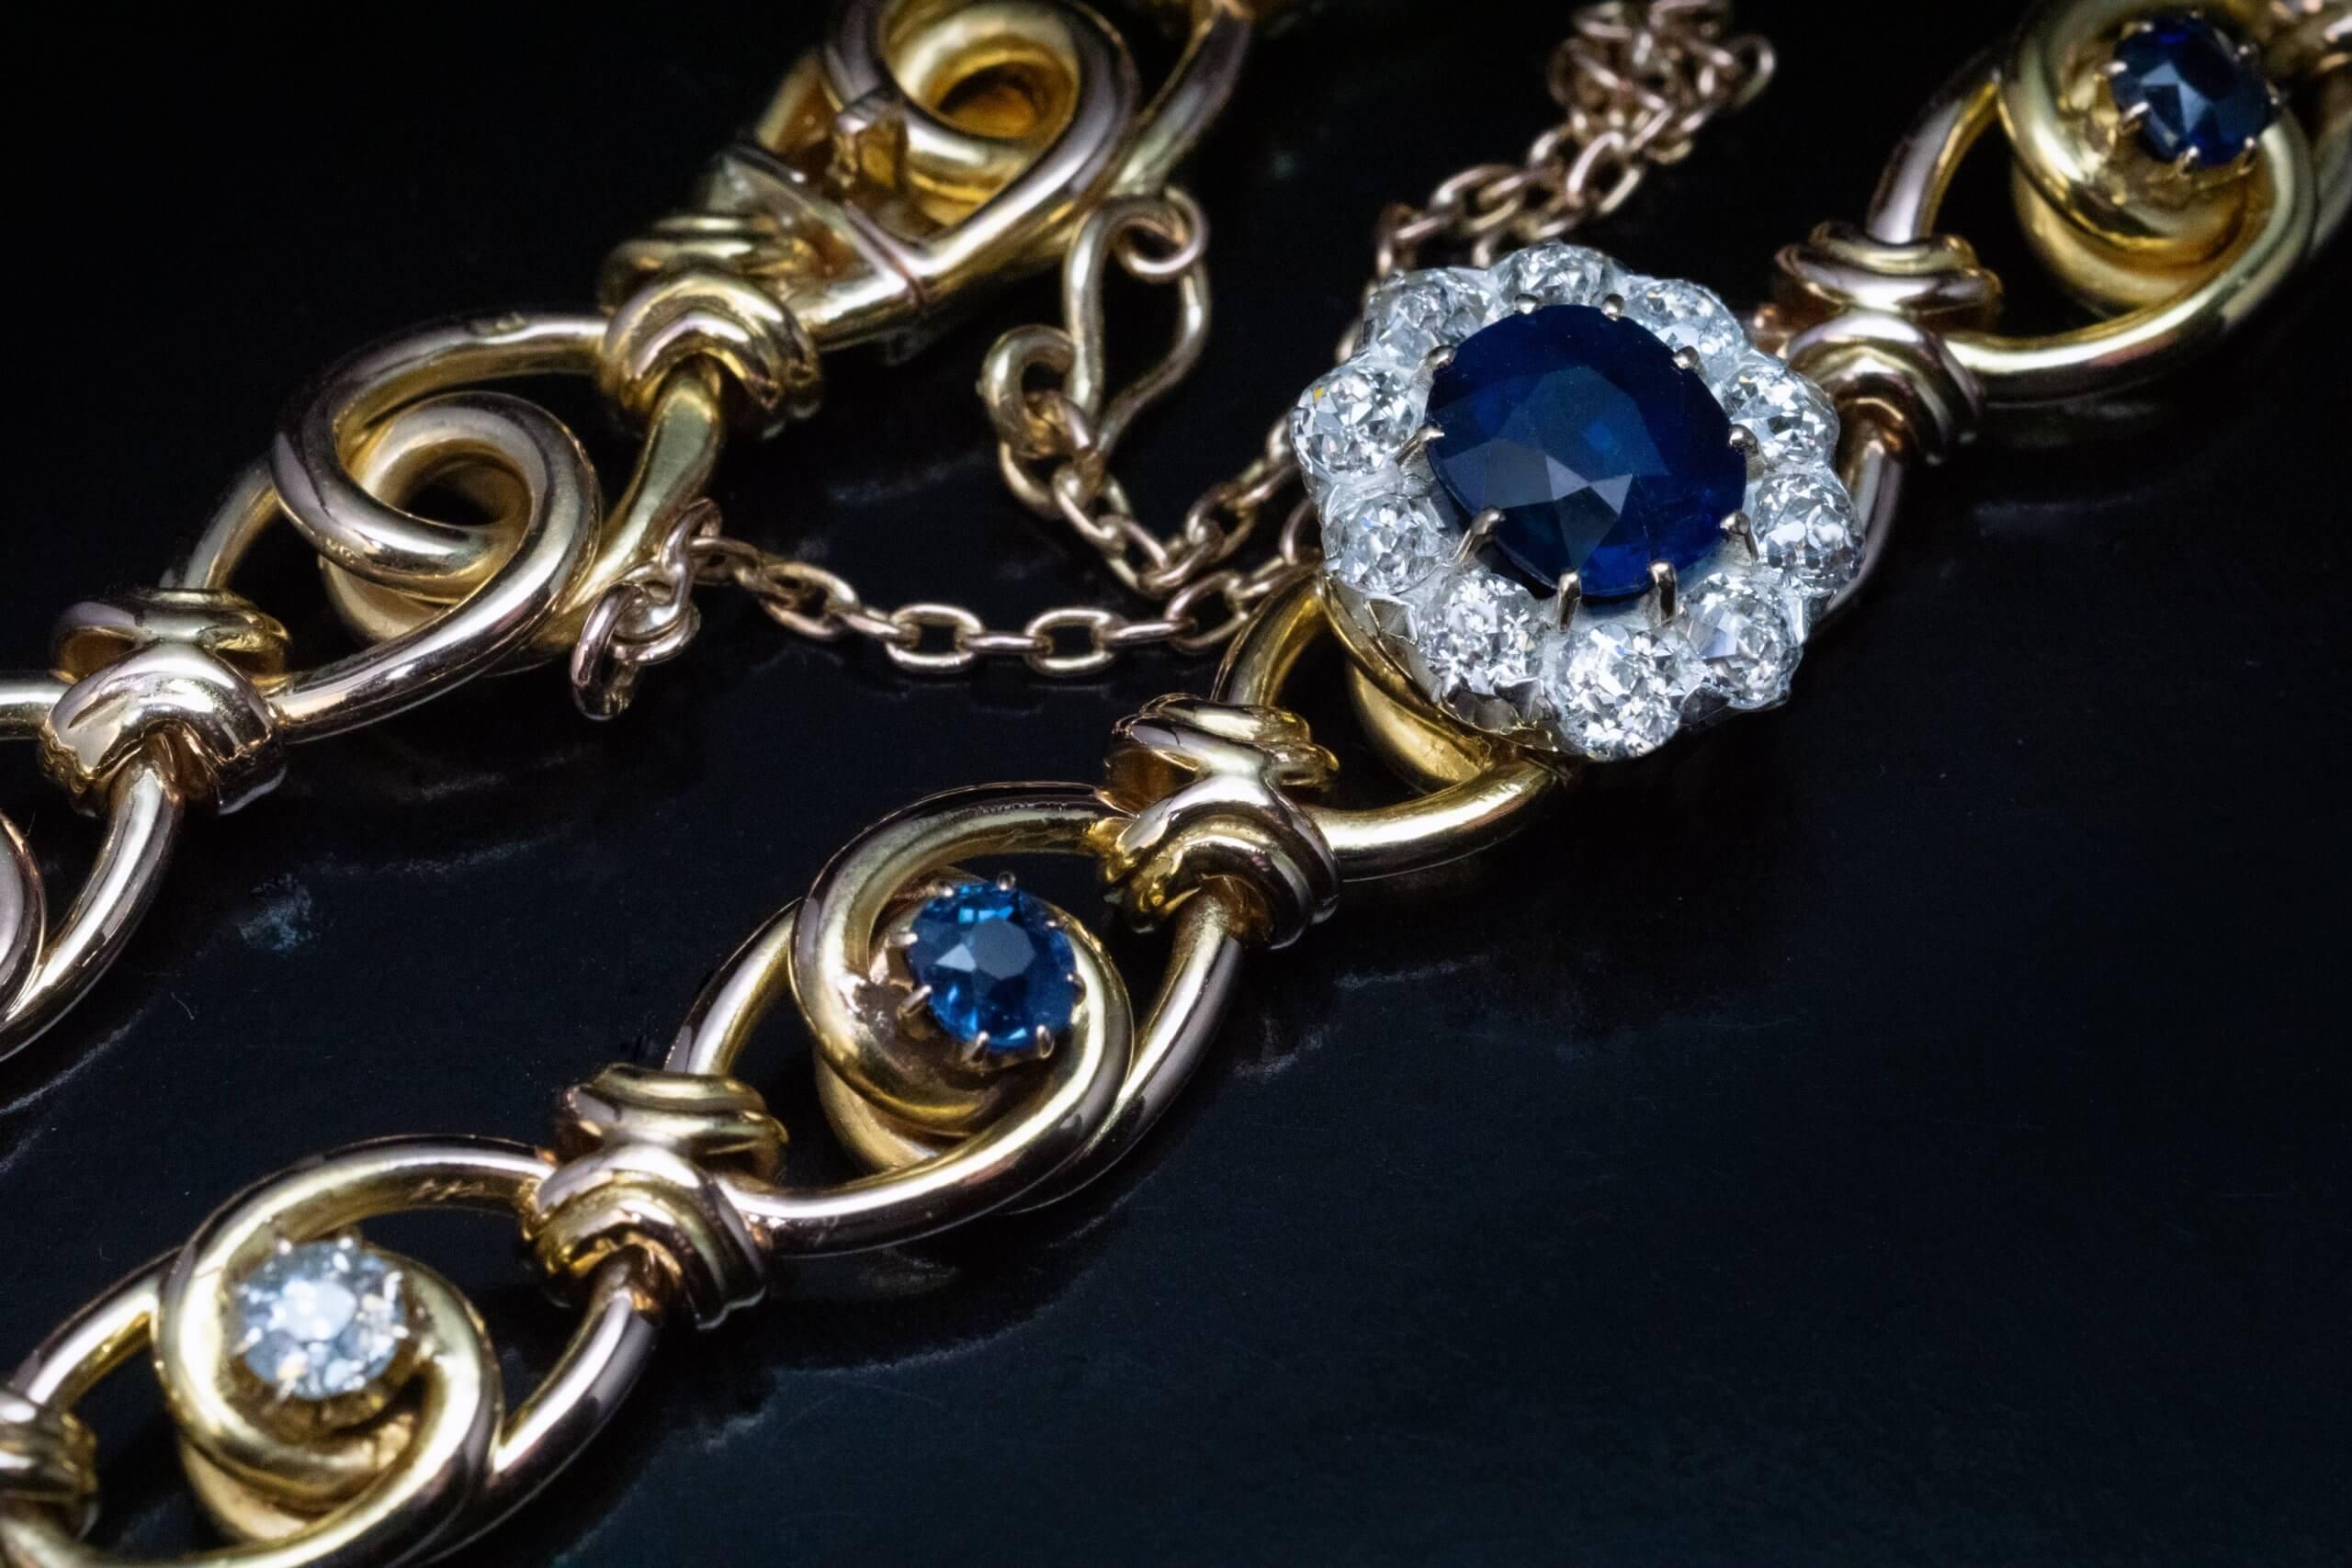 CIRCA 1890er Jahre  Das Gliederarmband aus 14-karätigem Gelbgold trägt in der Mitte einen nachtblauen Saphir, umgeben von funkelnden Diamanten im Minenschliff (in Silber über Gold gefasst). Der Saphir- und Diamantencluster wird von zwei kleinen